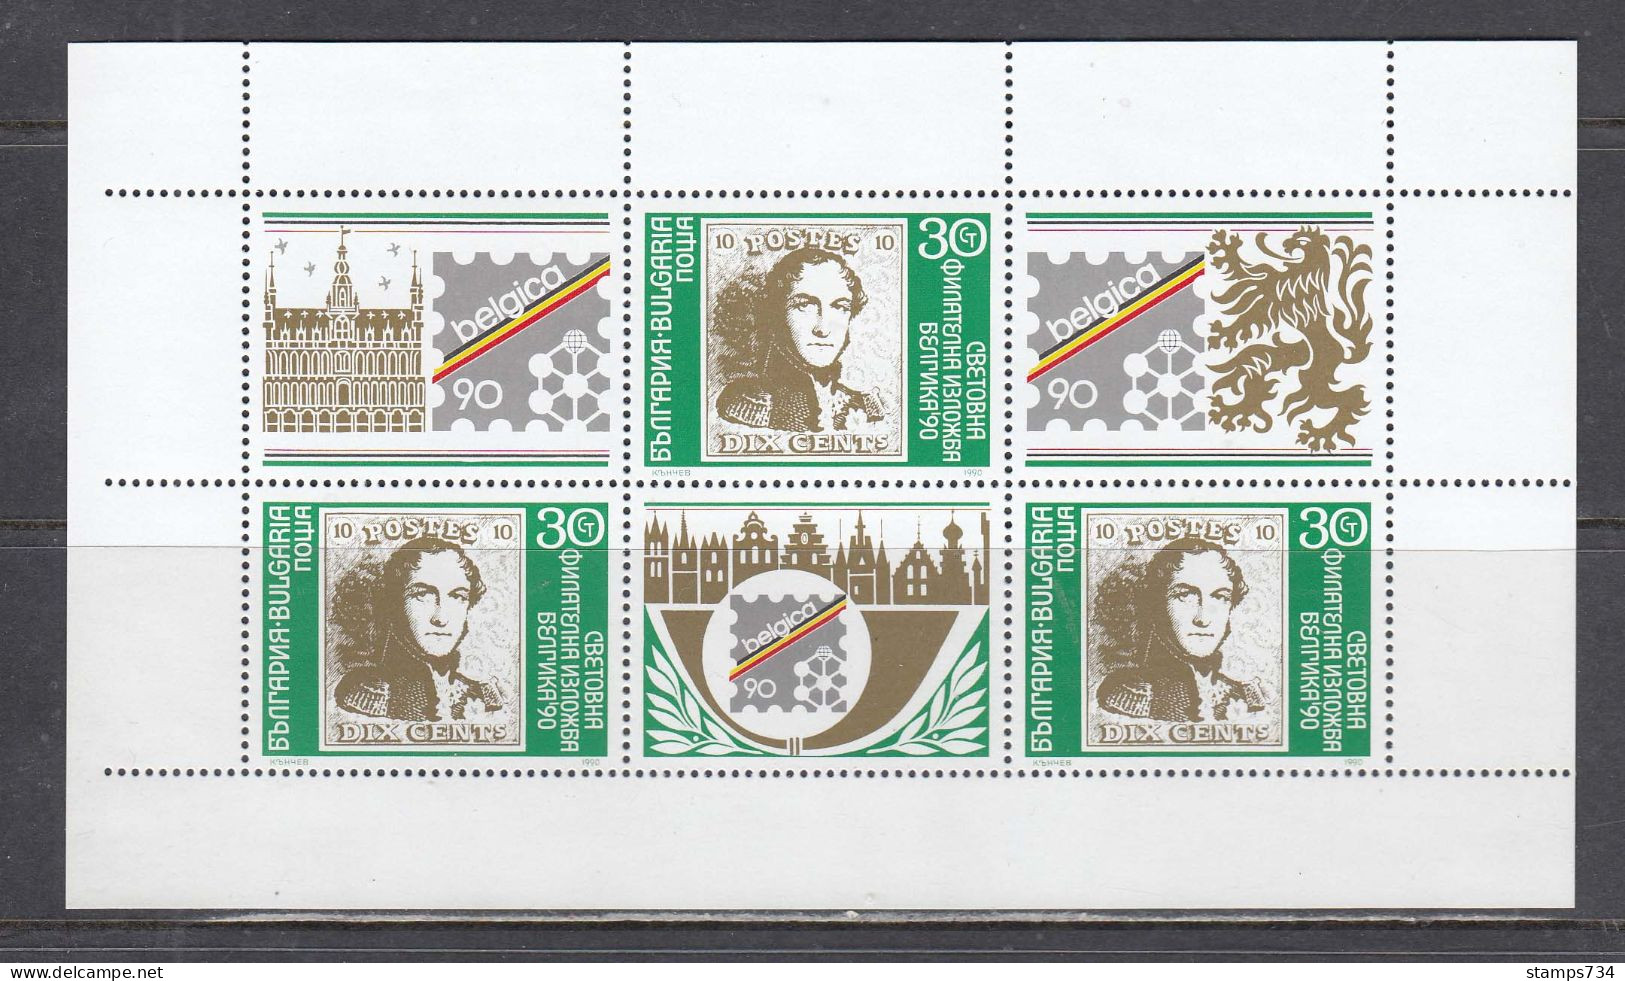 Bulgaria 1990 - International Stamp Exhibition BELGICA'90, Mi-Nr. 3838 In Sheet, MNH** - Ungebraucht